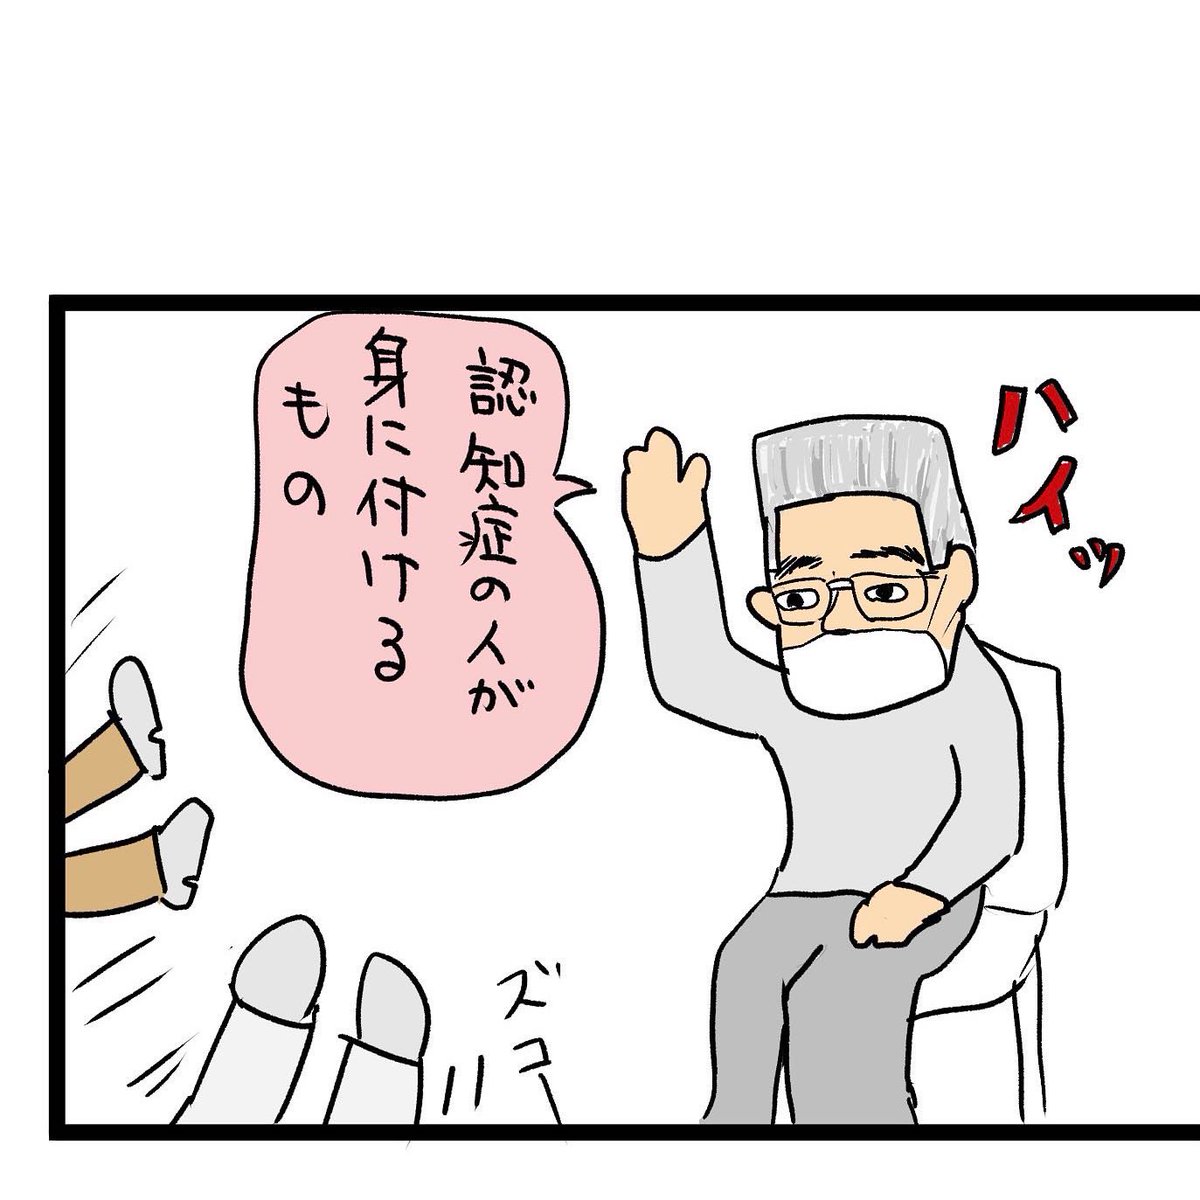 #四コマ漫画
#認知症サポーター
オレンジリング 